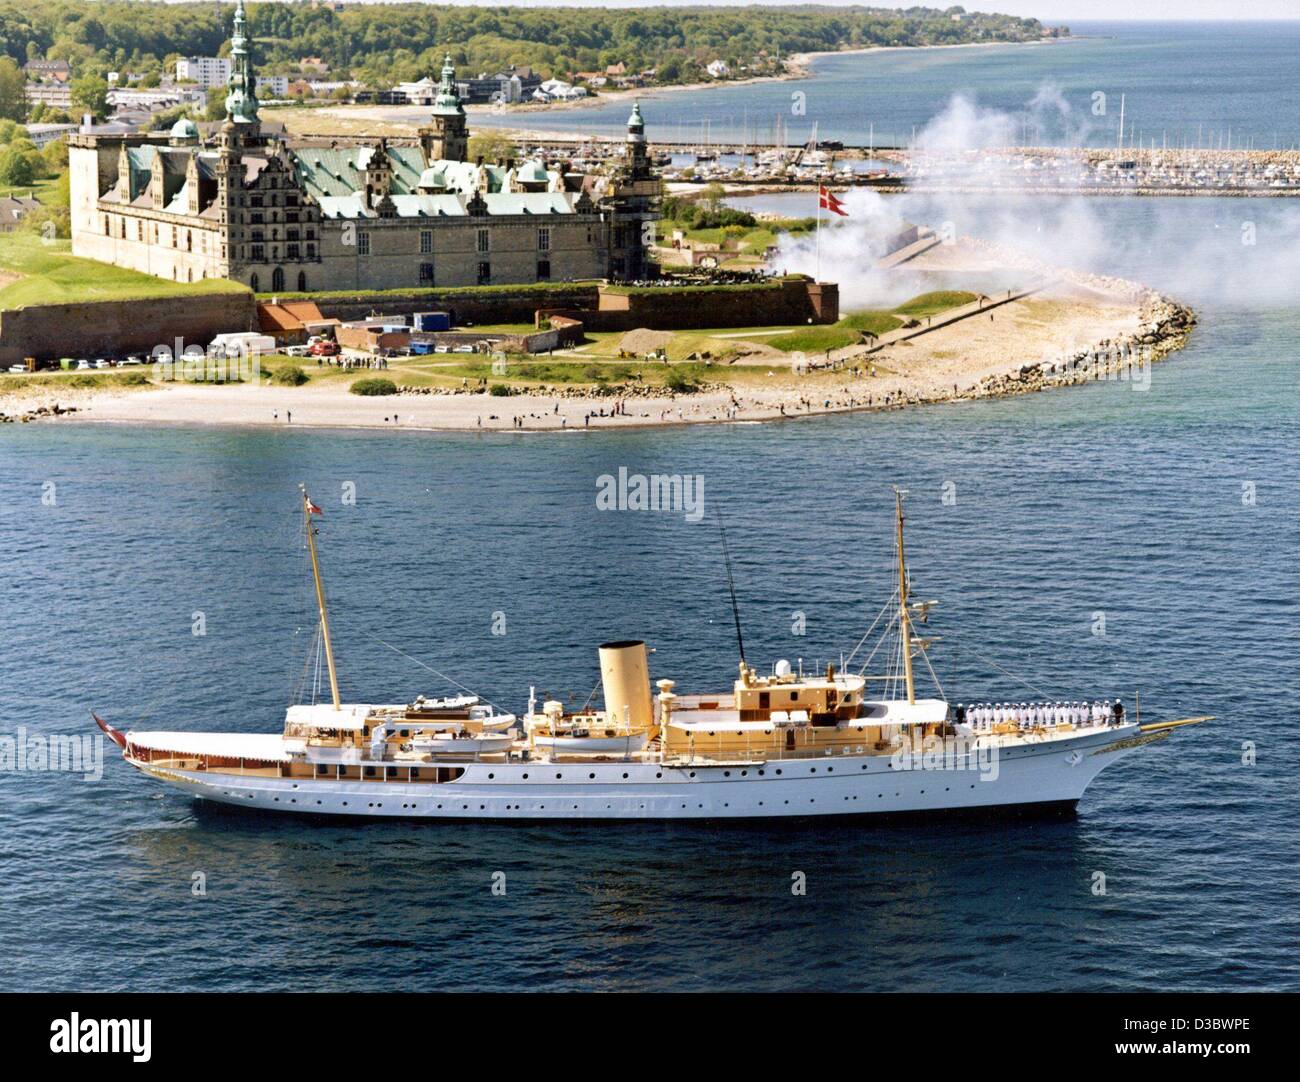 Los archivos de datos (DPA) - Dinamarca's Royal Yacht 'Dannebrog' es saludado desde el renacimiento castillo Kronborg cerca de Helsingor, Dinamarca (sin fecha, recientes filer). Kronborg es una lista de los sitios culturales de la Unesco. Foto de stock